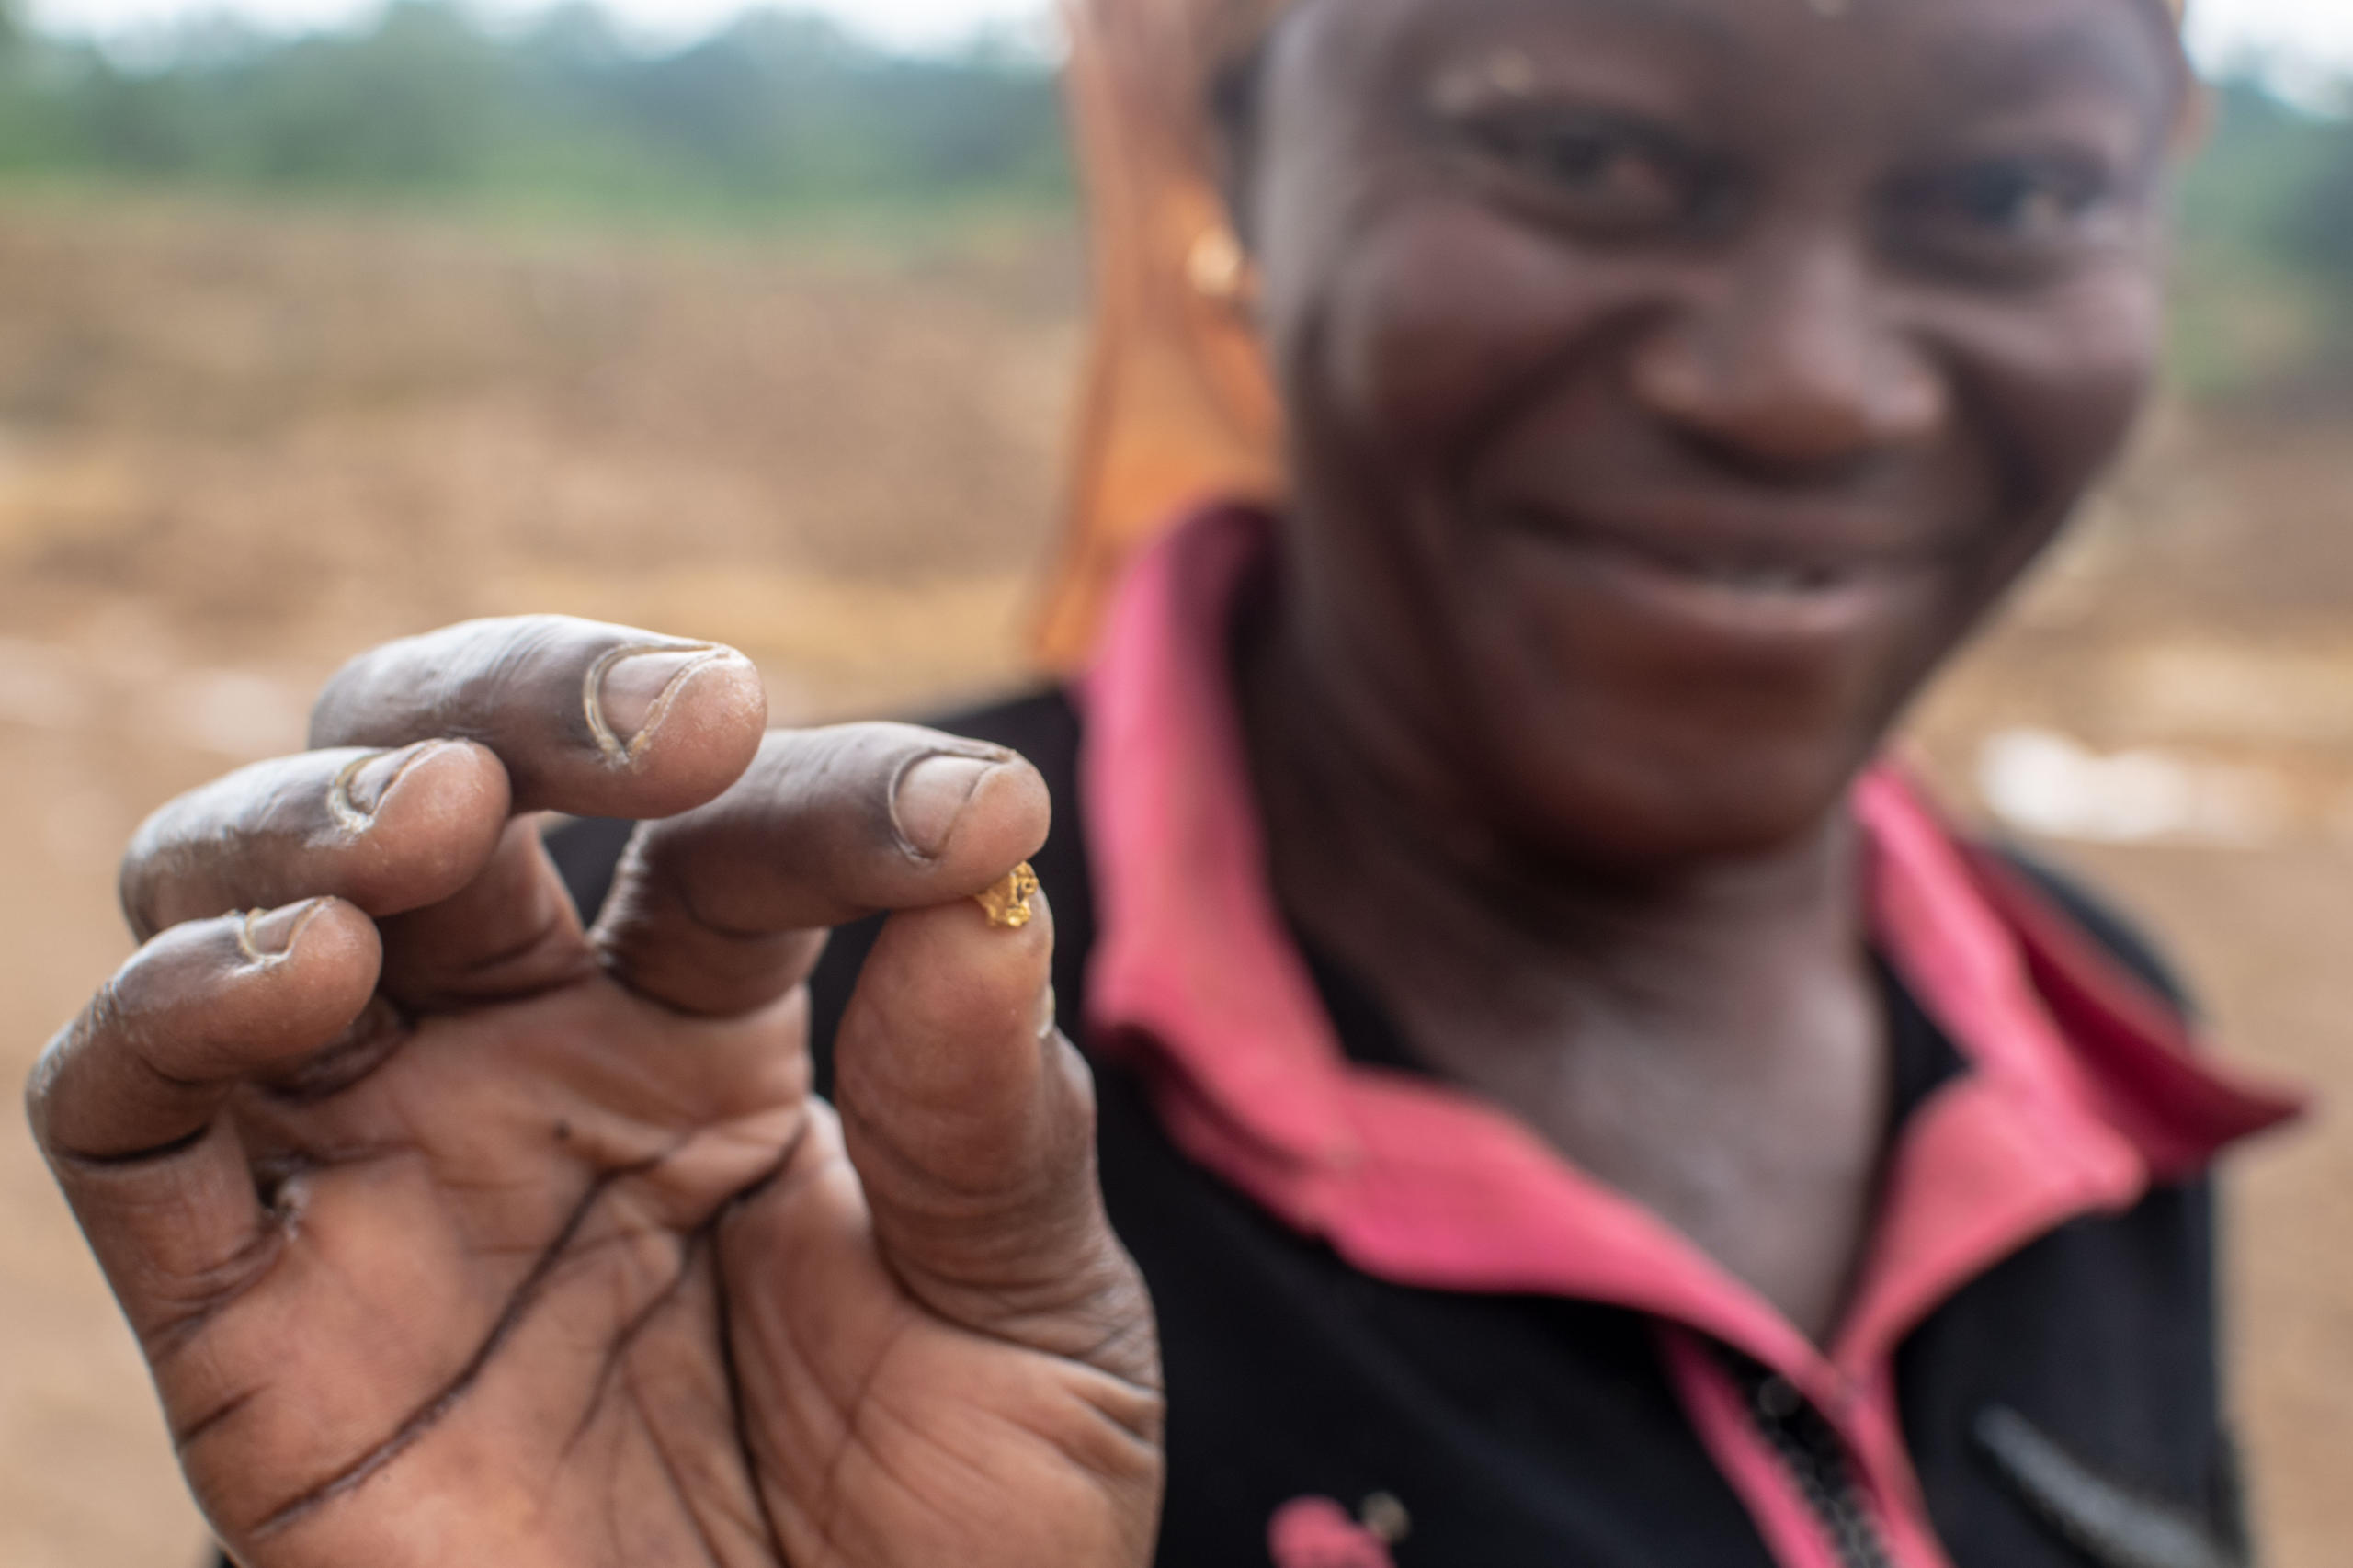 كتلة صلبة صغيرة من الذهب بين أصابع شخص من غانا